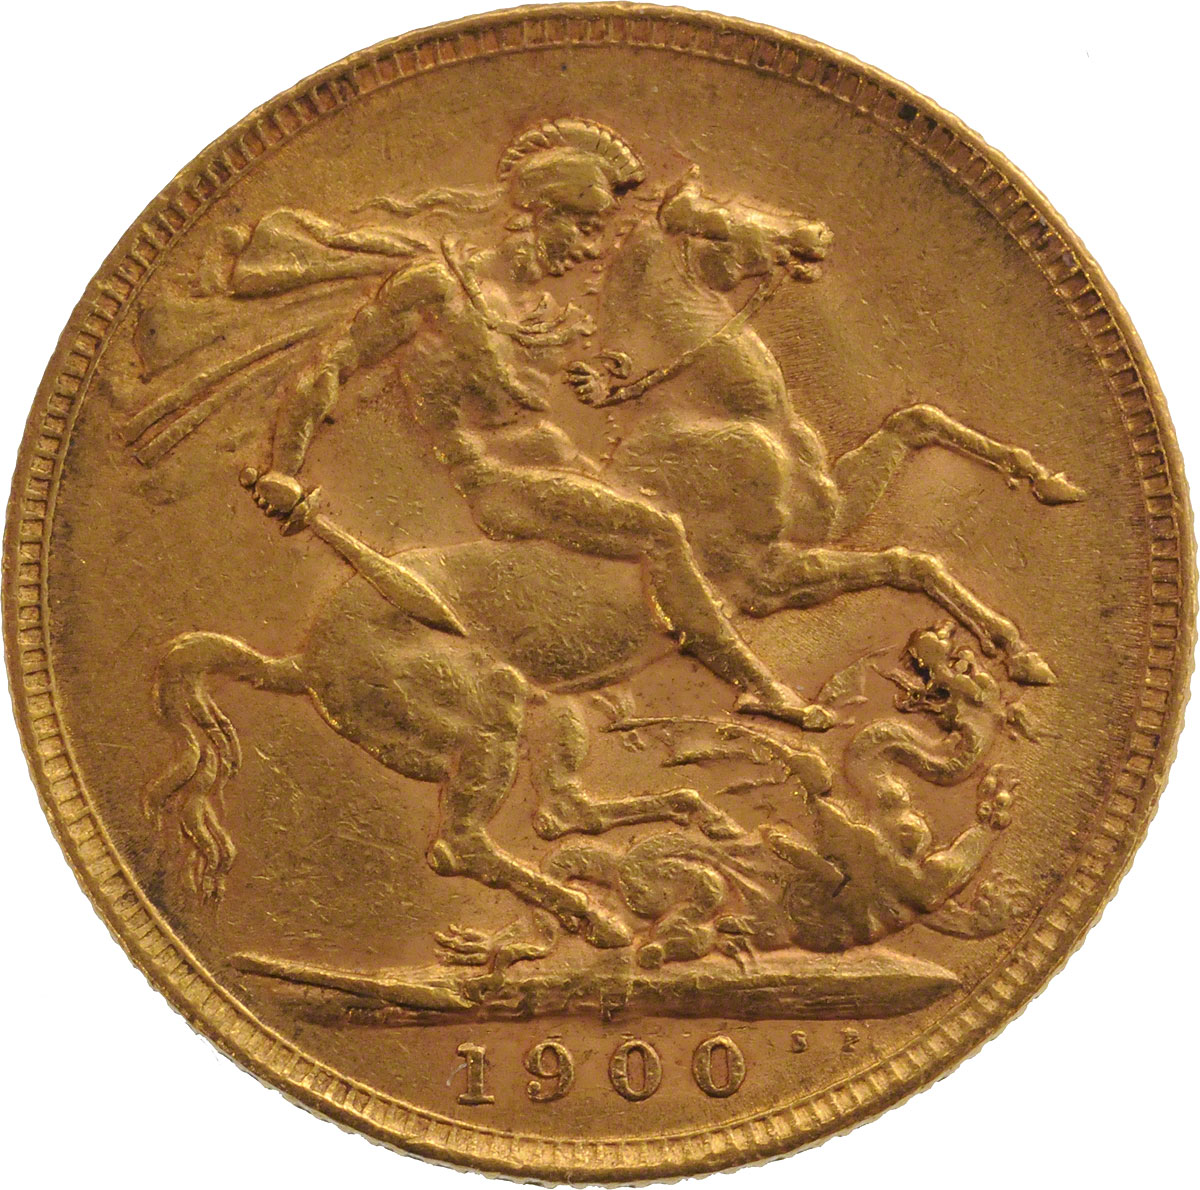 1900 Βικτώρια (Νομισματοκοπείο Περθ)